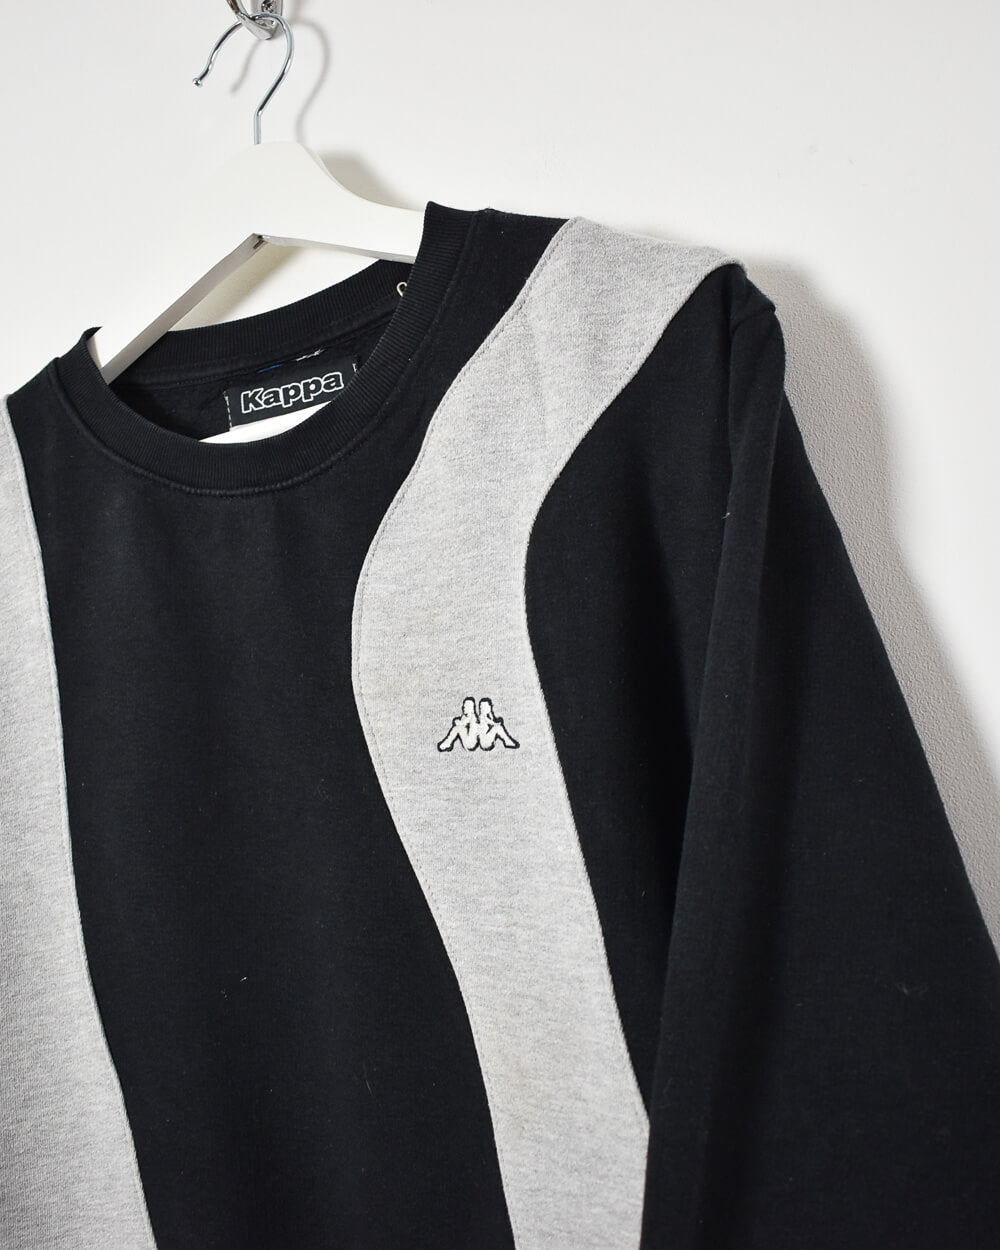 Black Kappa Rework Sweatshirt - Medium